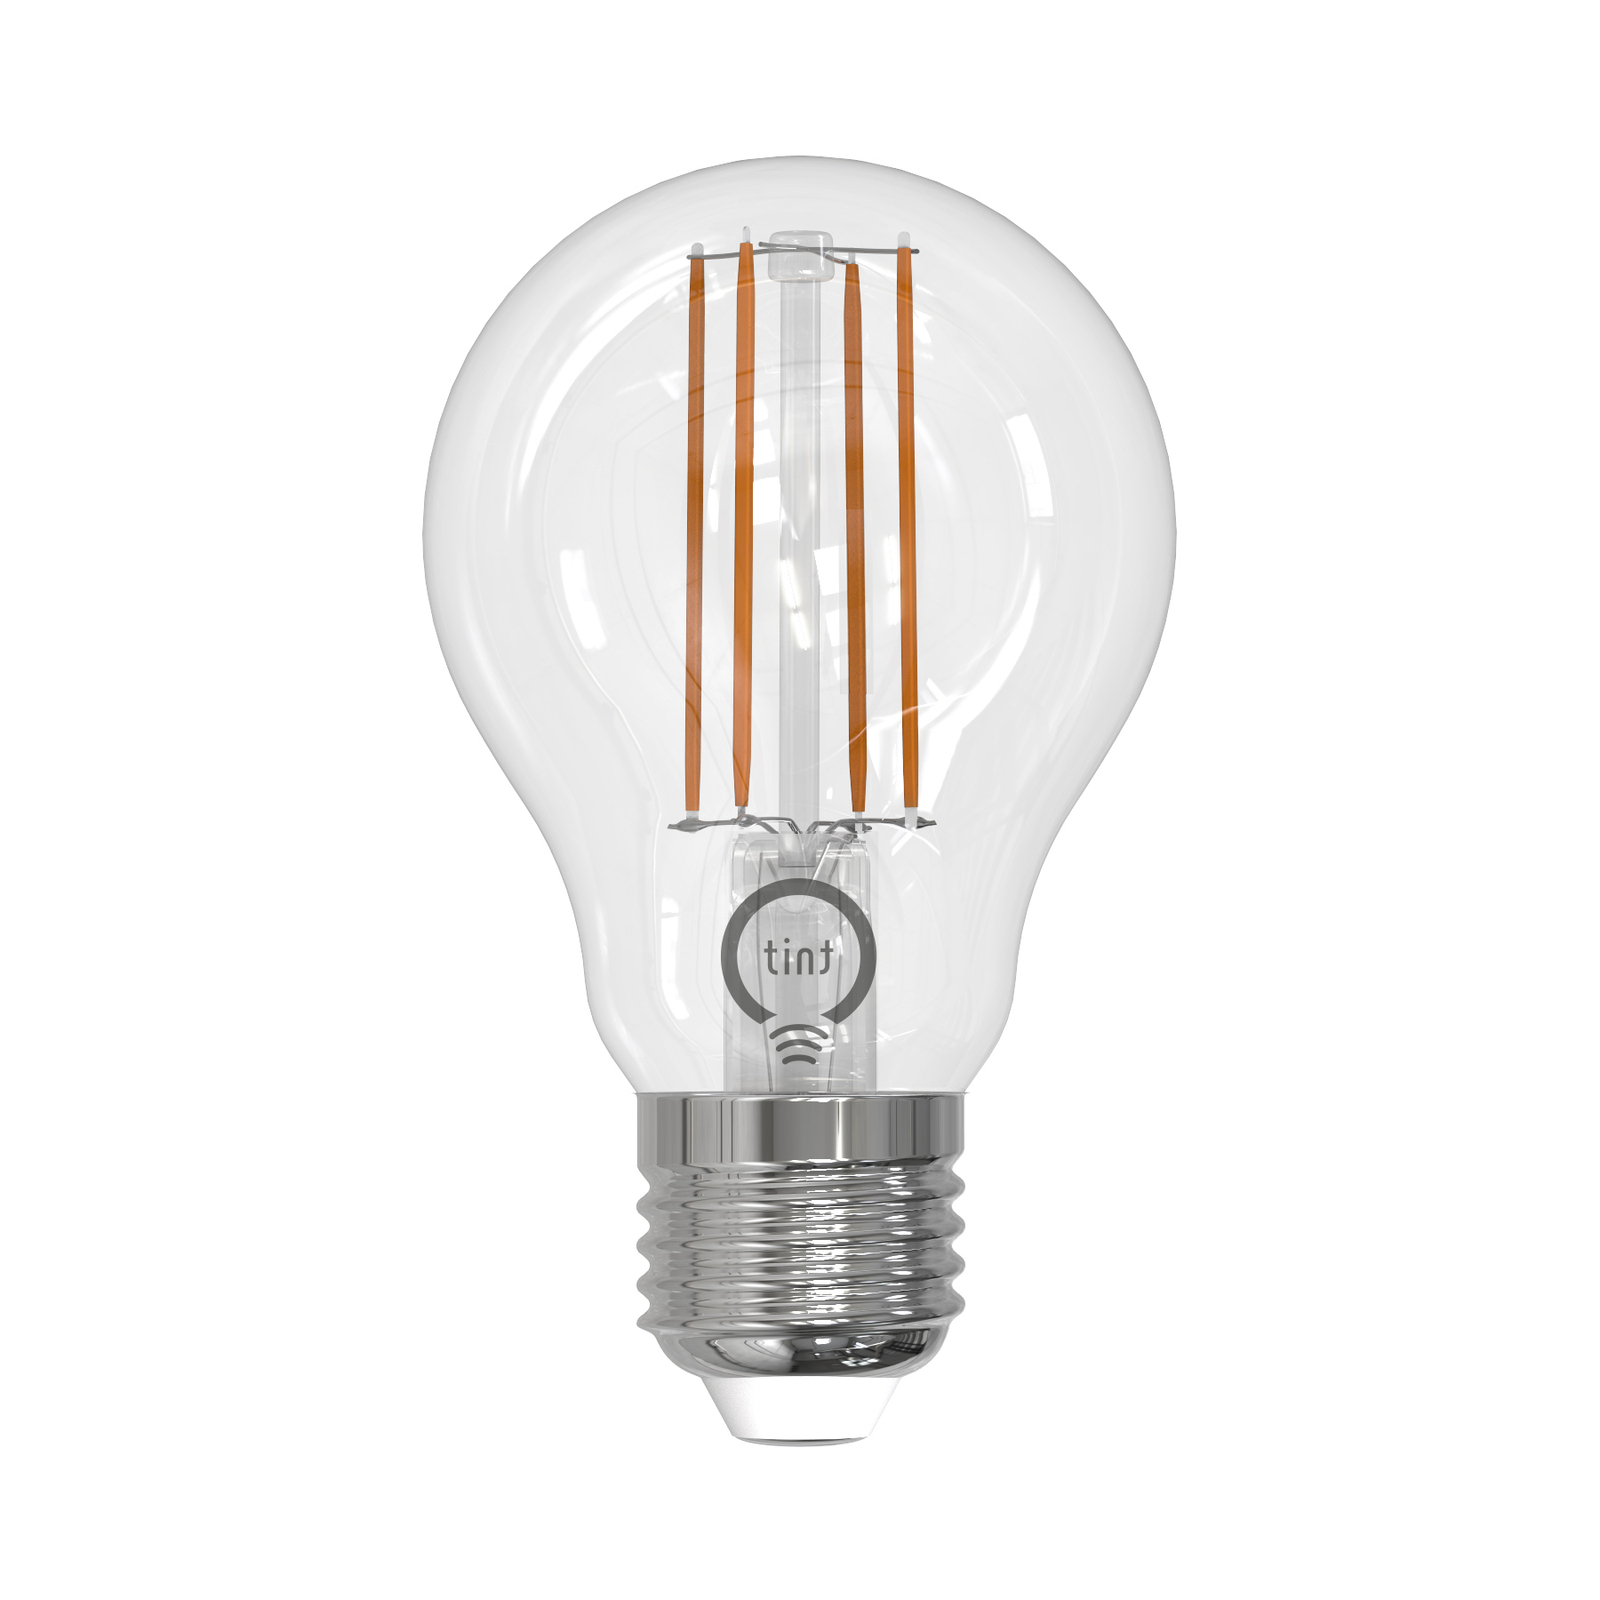 Müller Licht tint LED filament lamp E27 7W CCT